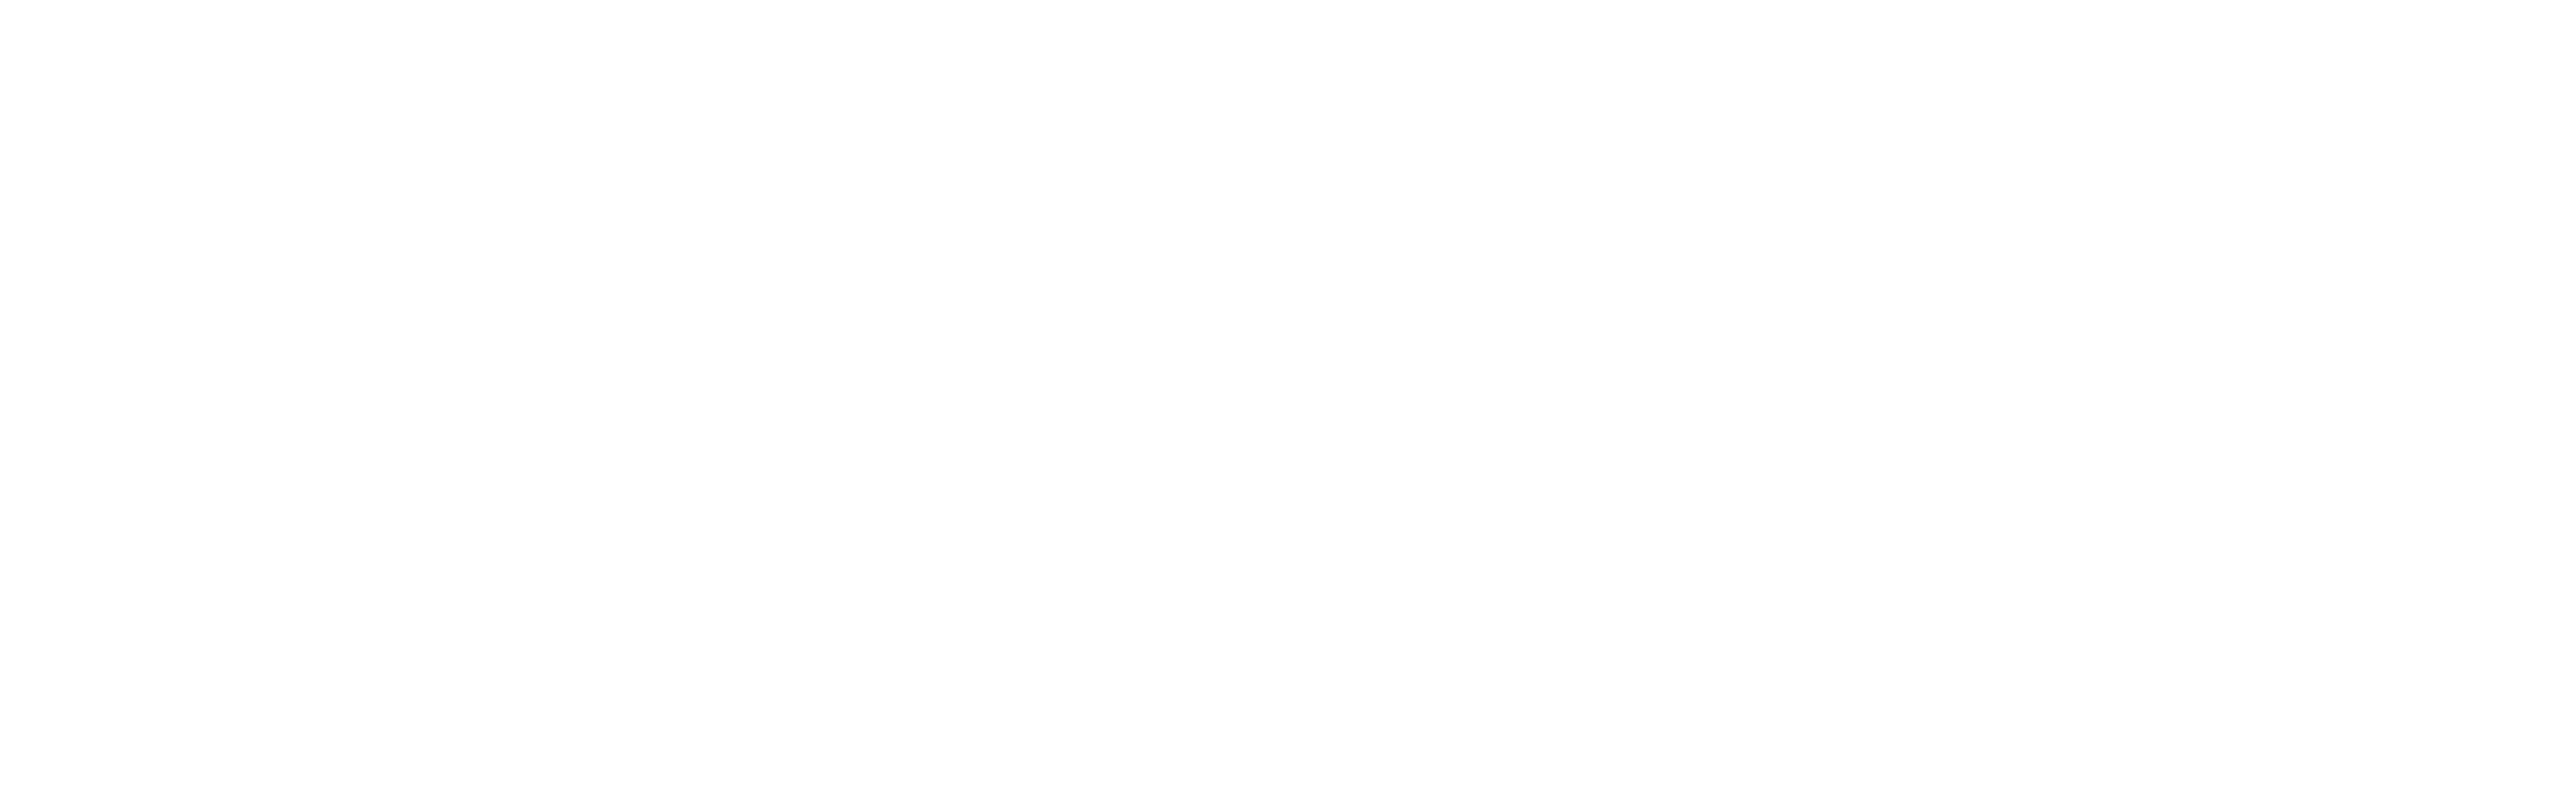 Forklifts Sweden AB | Köp, hyr, leasa truckar i Stockholm